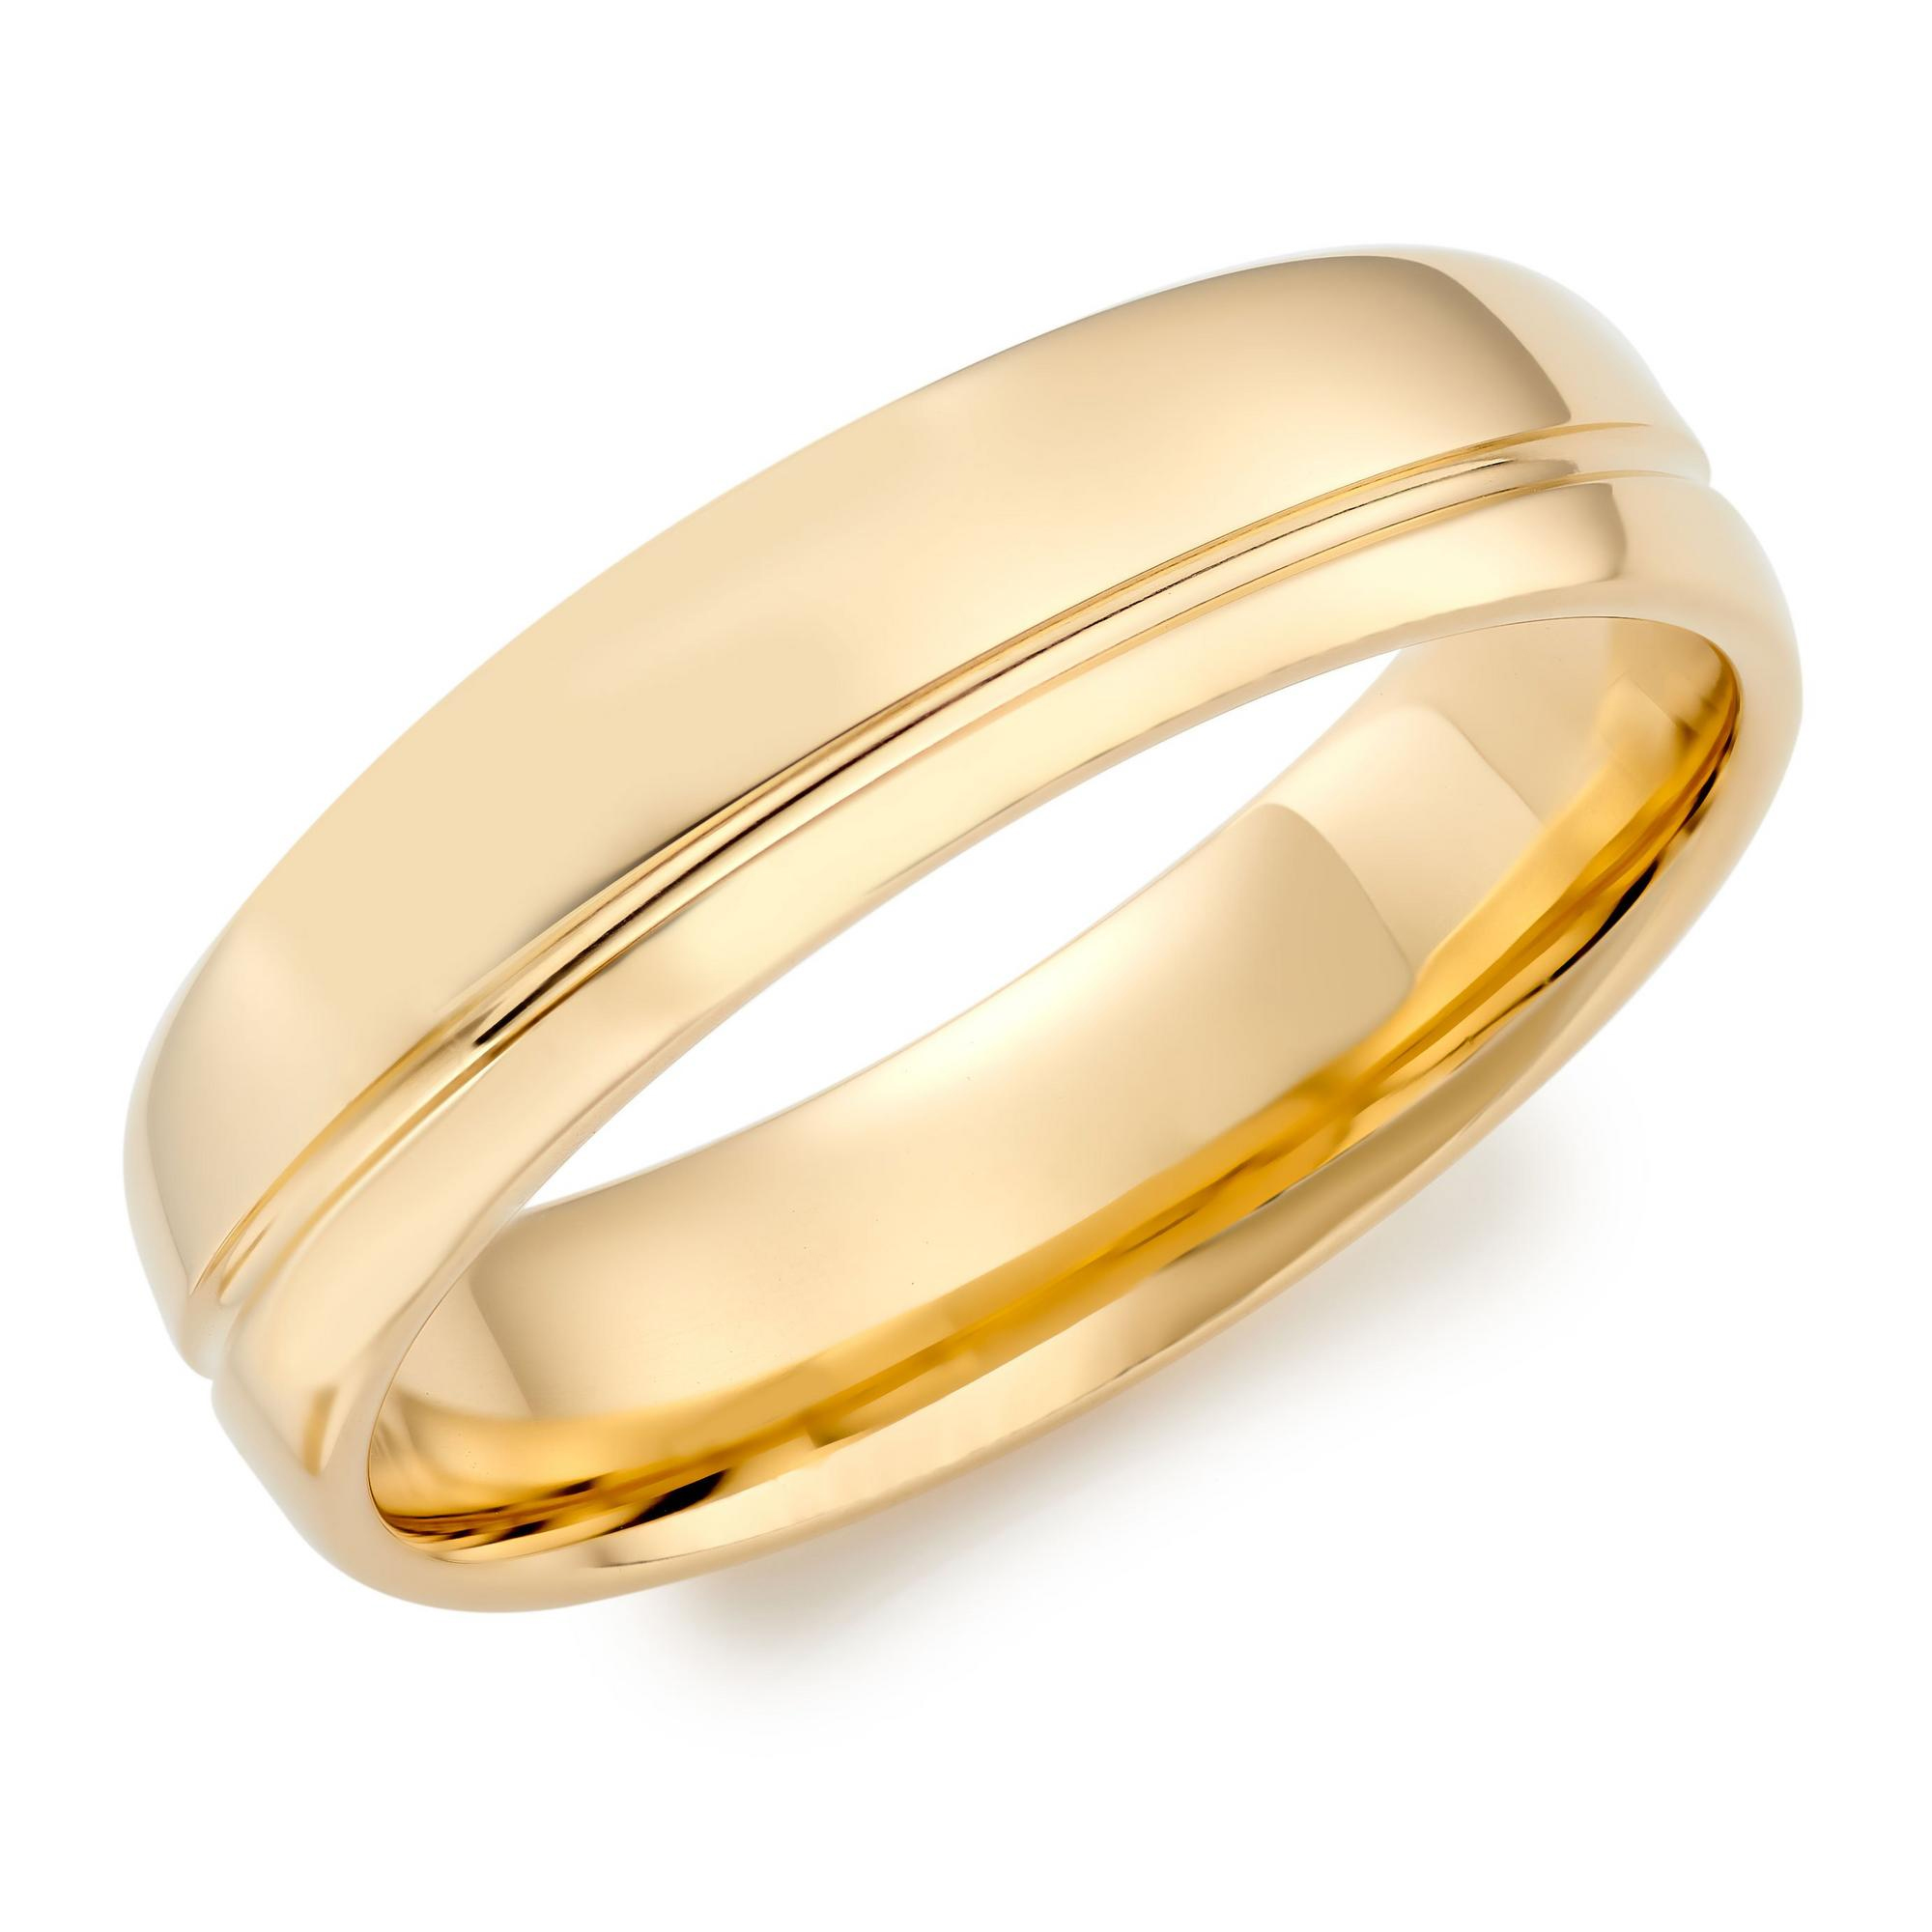 18ct Yellow Gold Men’s Wedding Ring